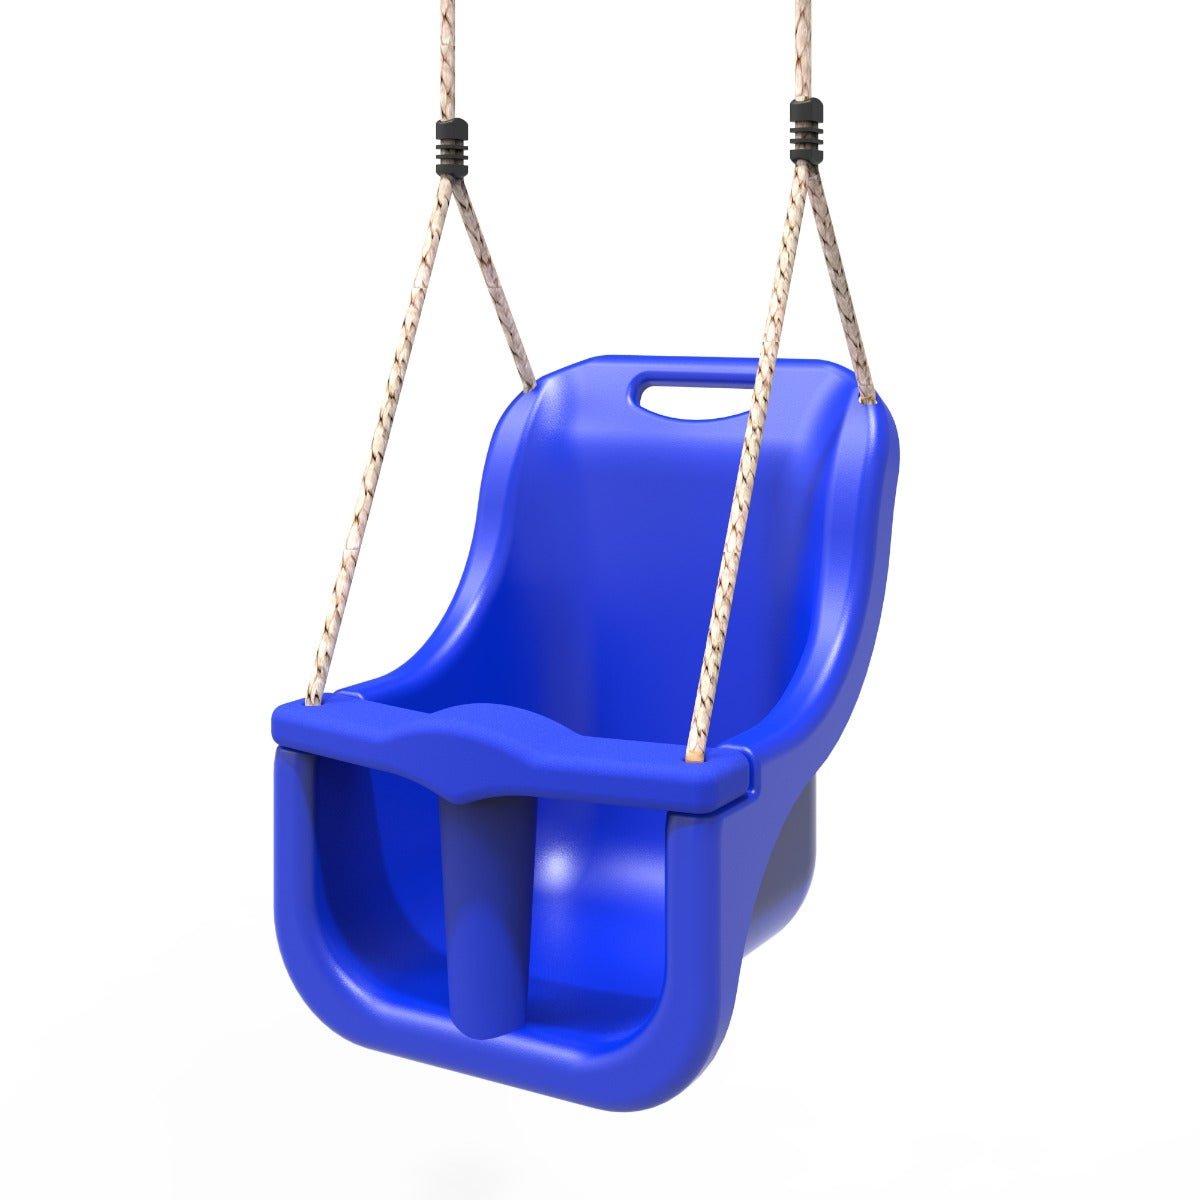 Rebo Baby Swing Seat - Blue